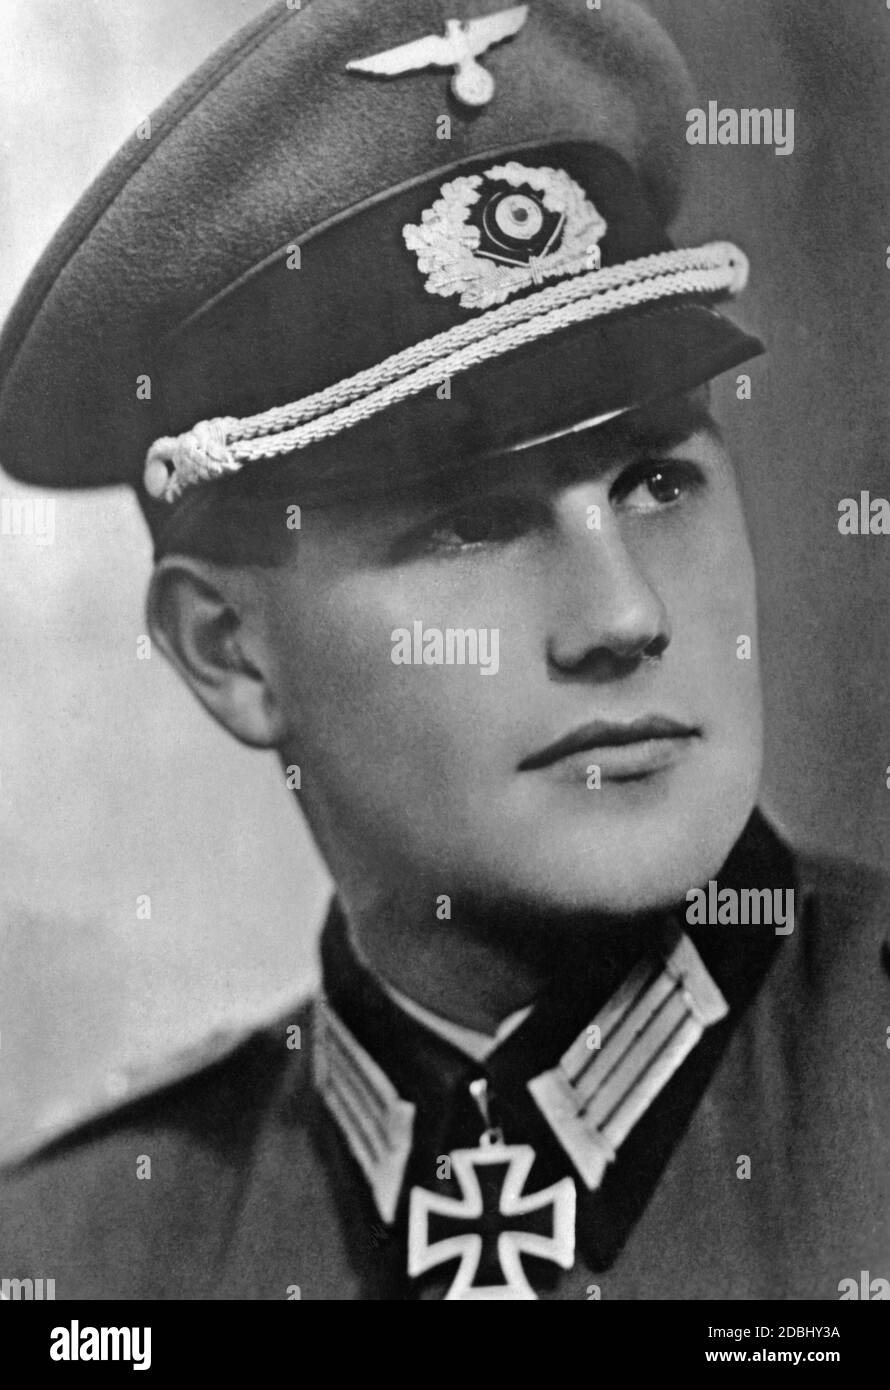 Oberleutnant Anton Gruenert, 3./Sturmgeschuetz Abteilung 201 con la Croce del Cavaliere nel 1943. La data è la data di assegnazione. Foto Stock